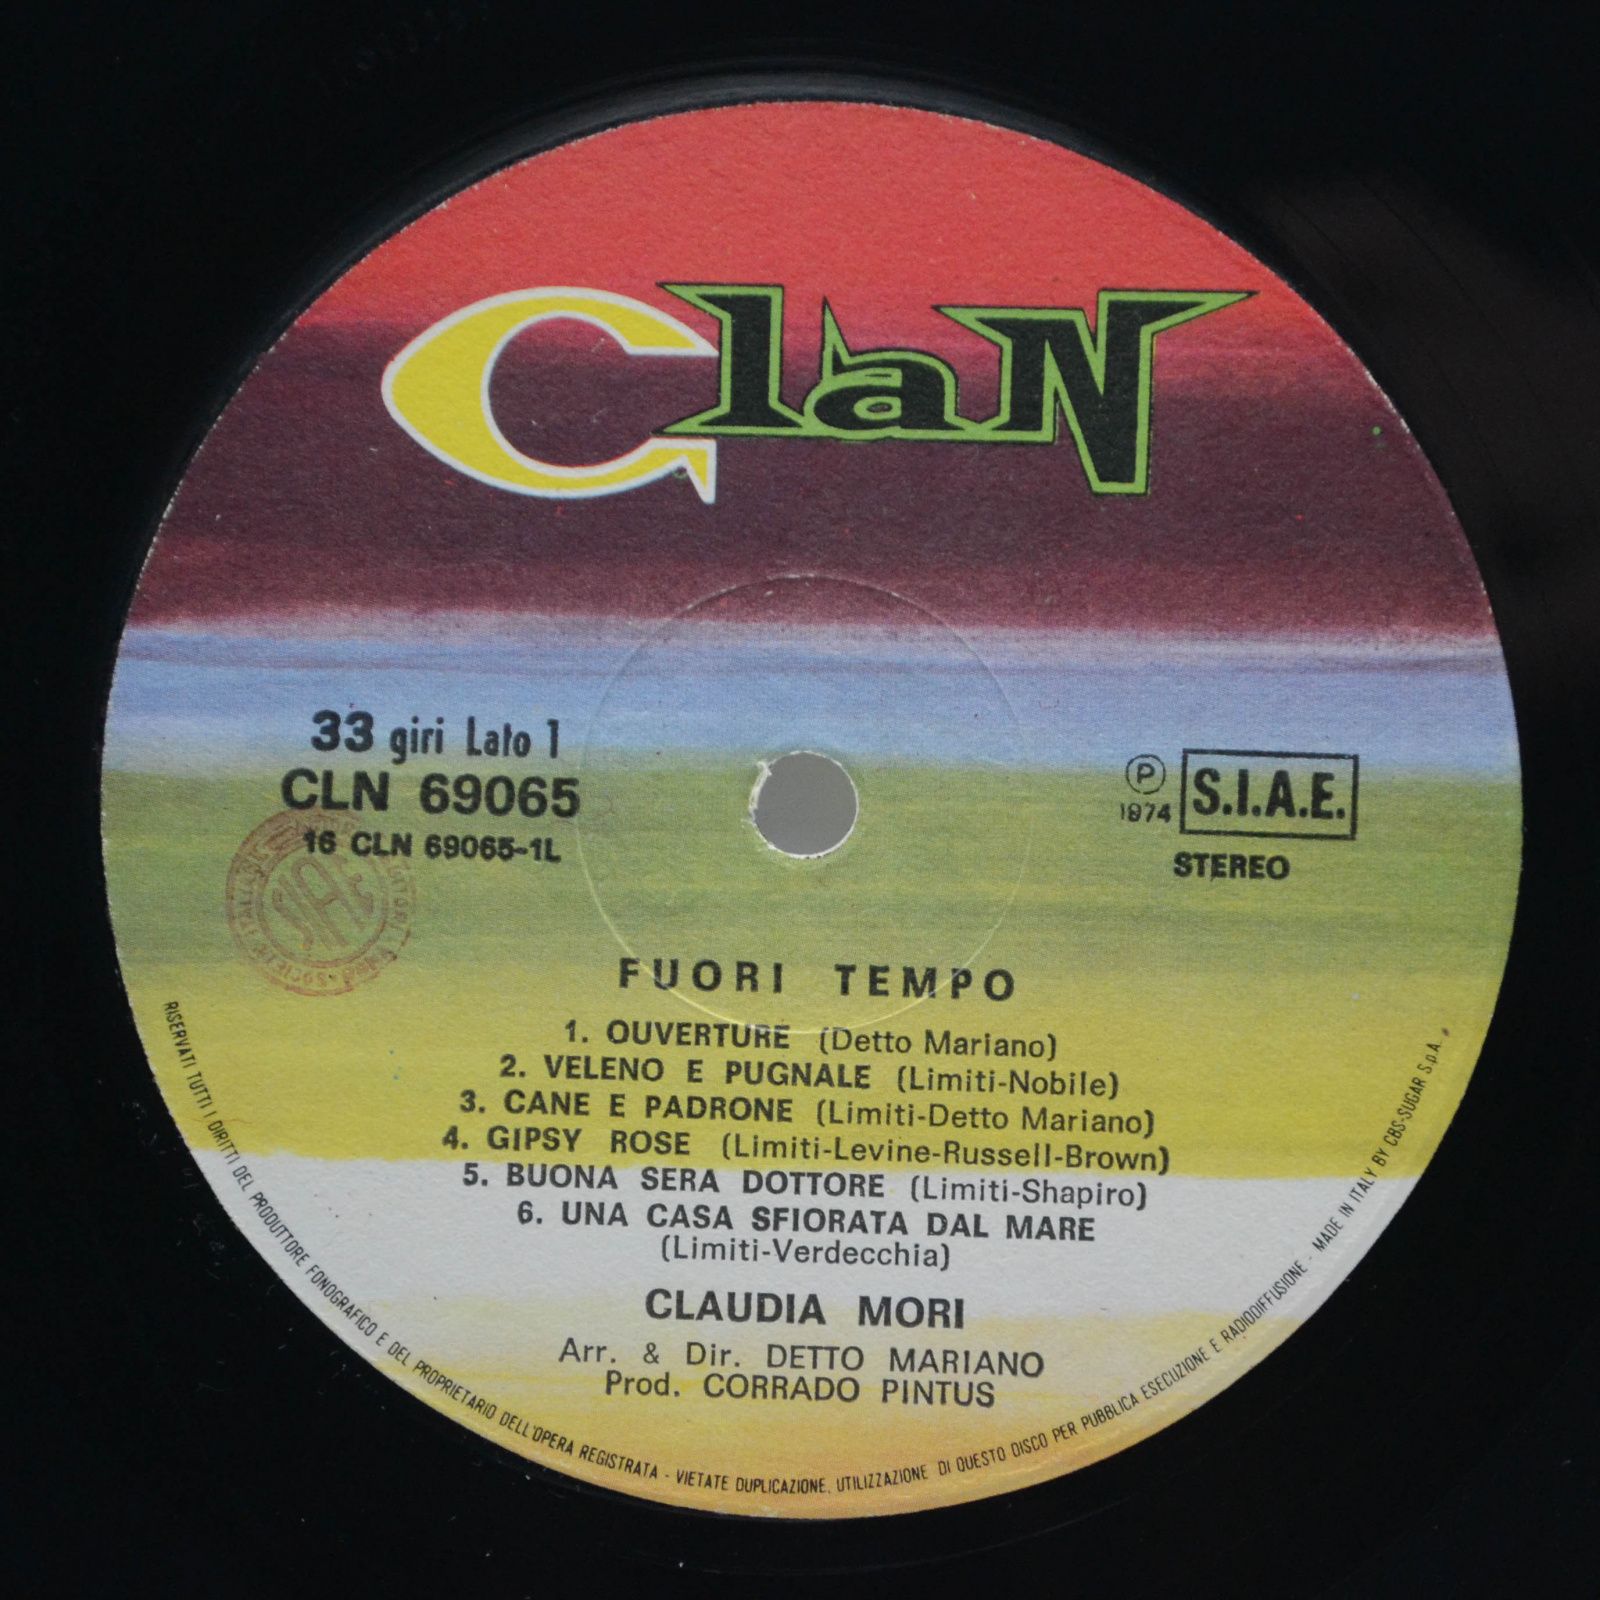 Claudia Mori — Fuori Tempo (1-st, Italy, Clan), 1974